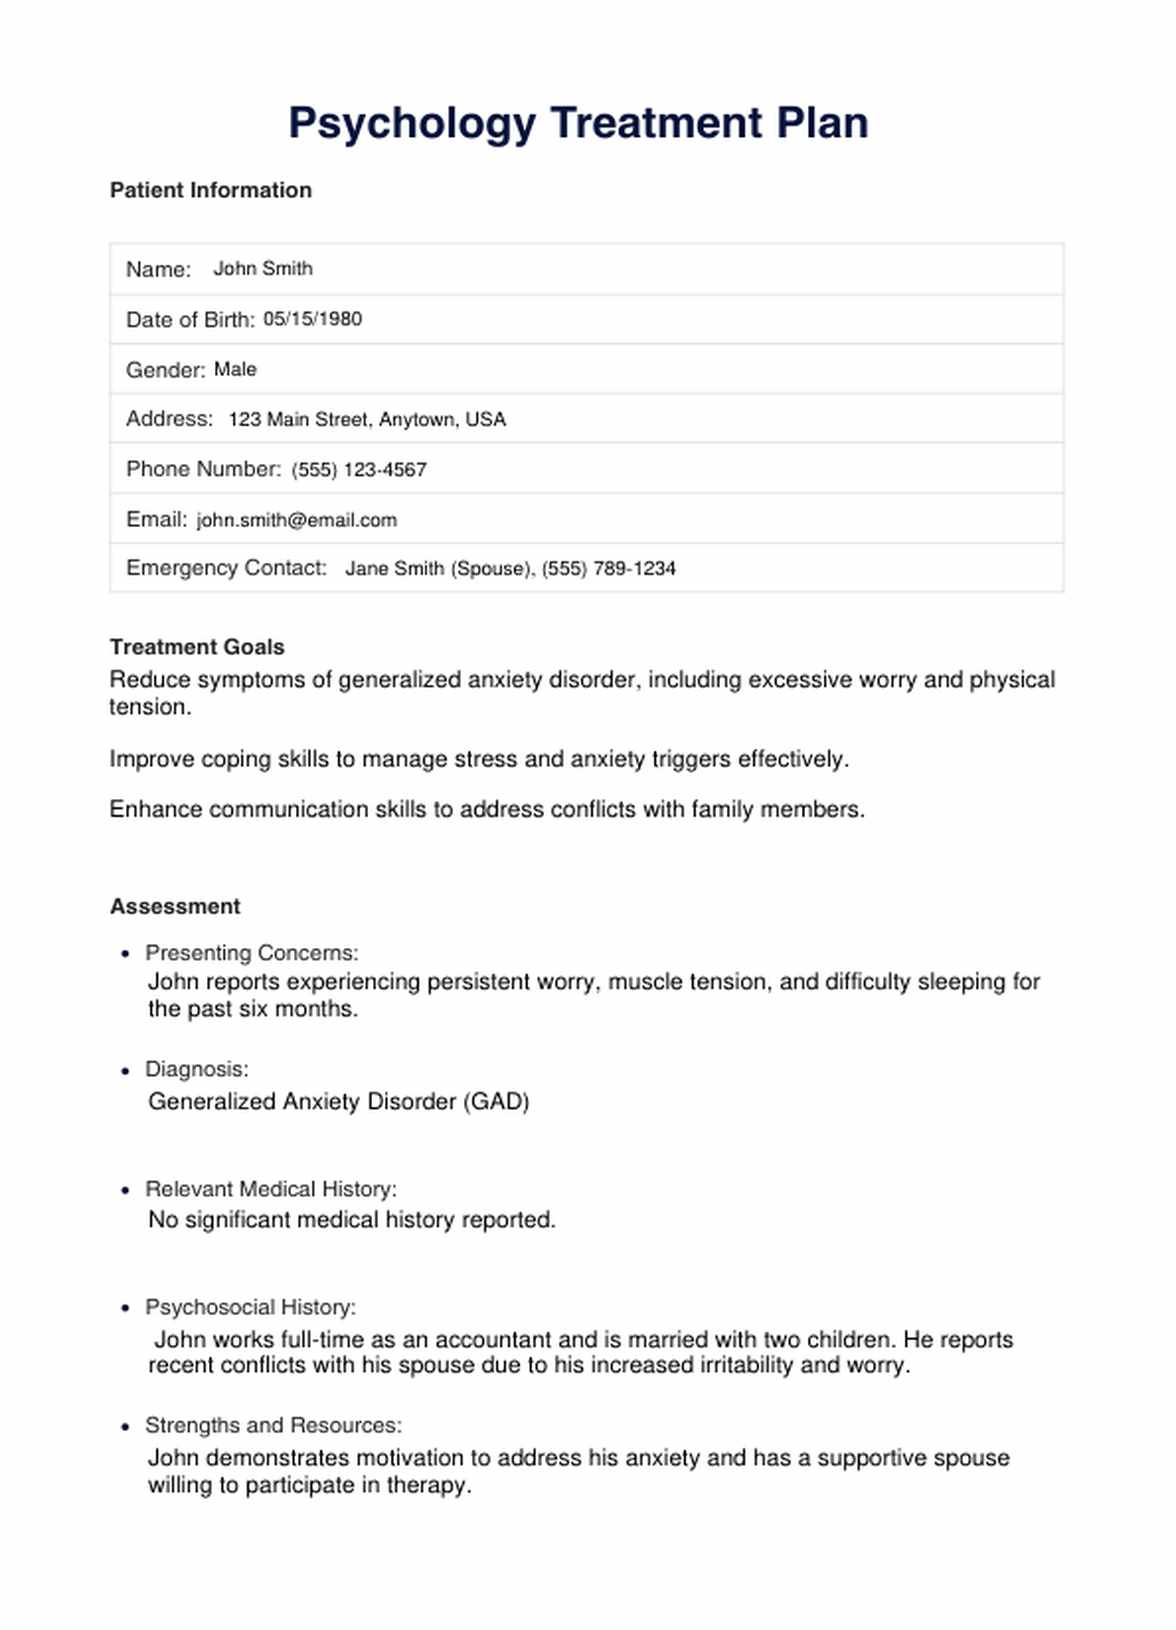 Psychology Treatment Plan PDF Example